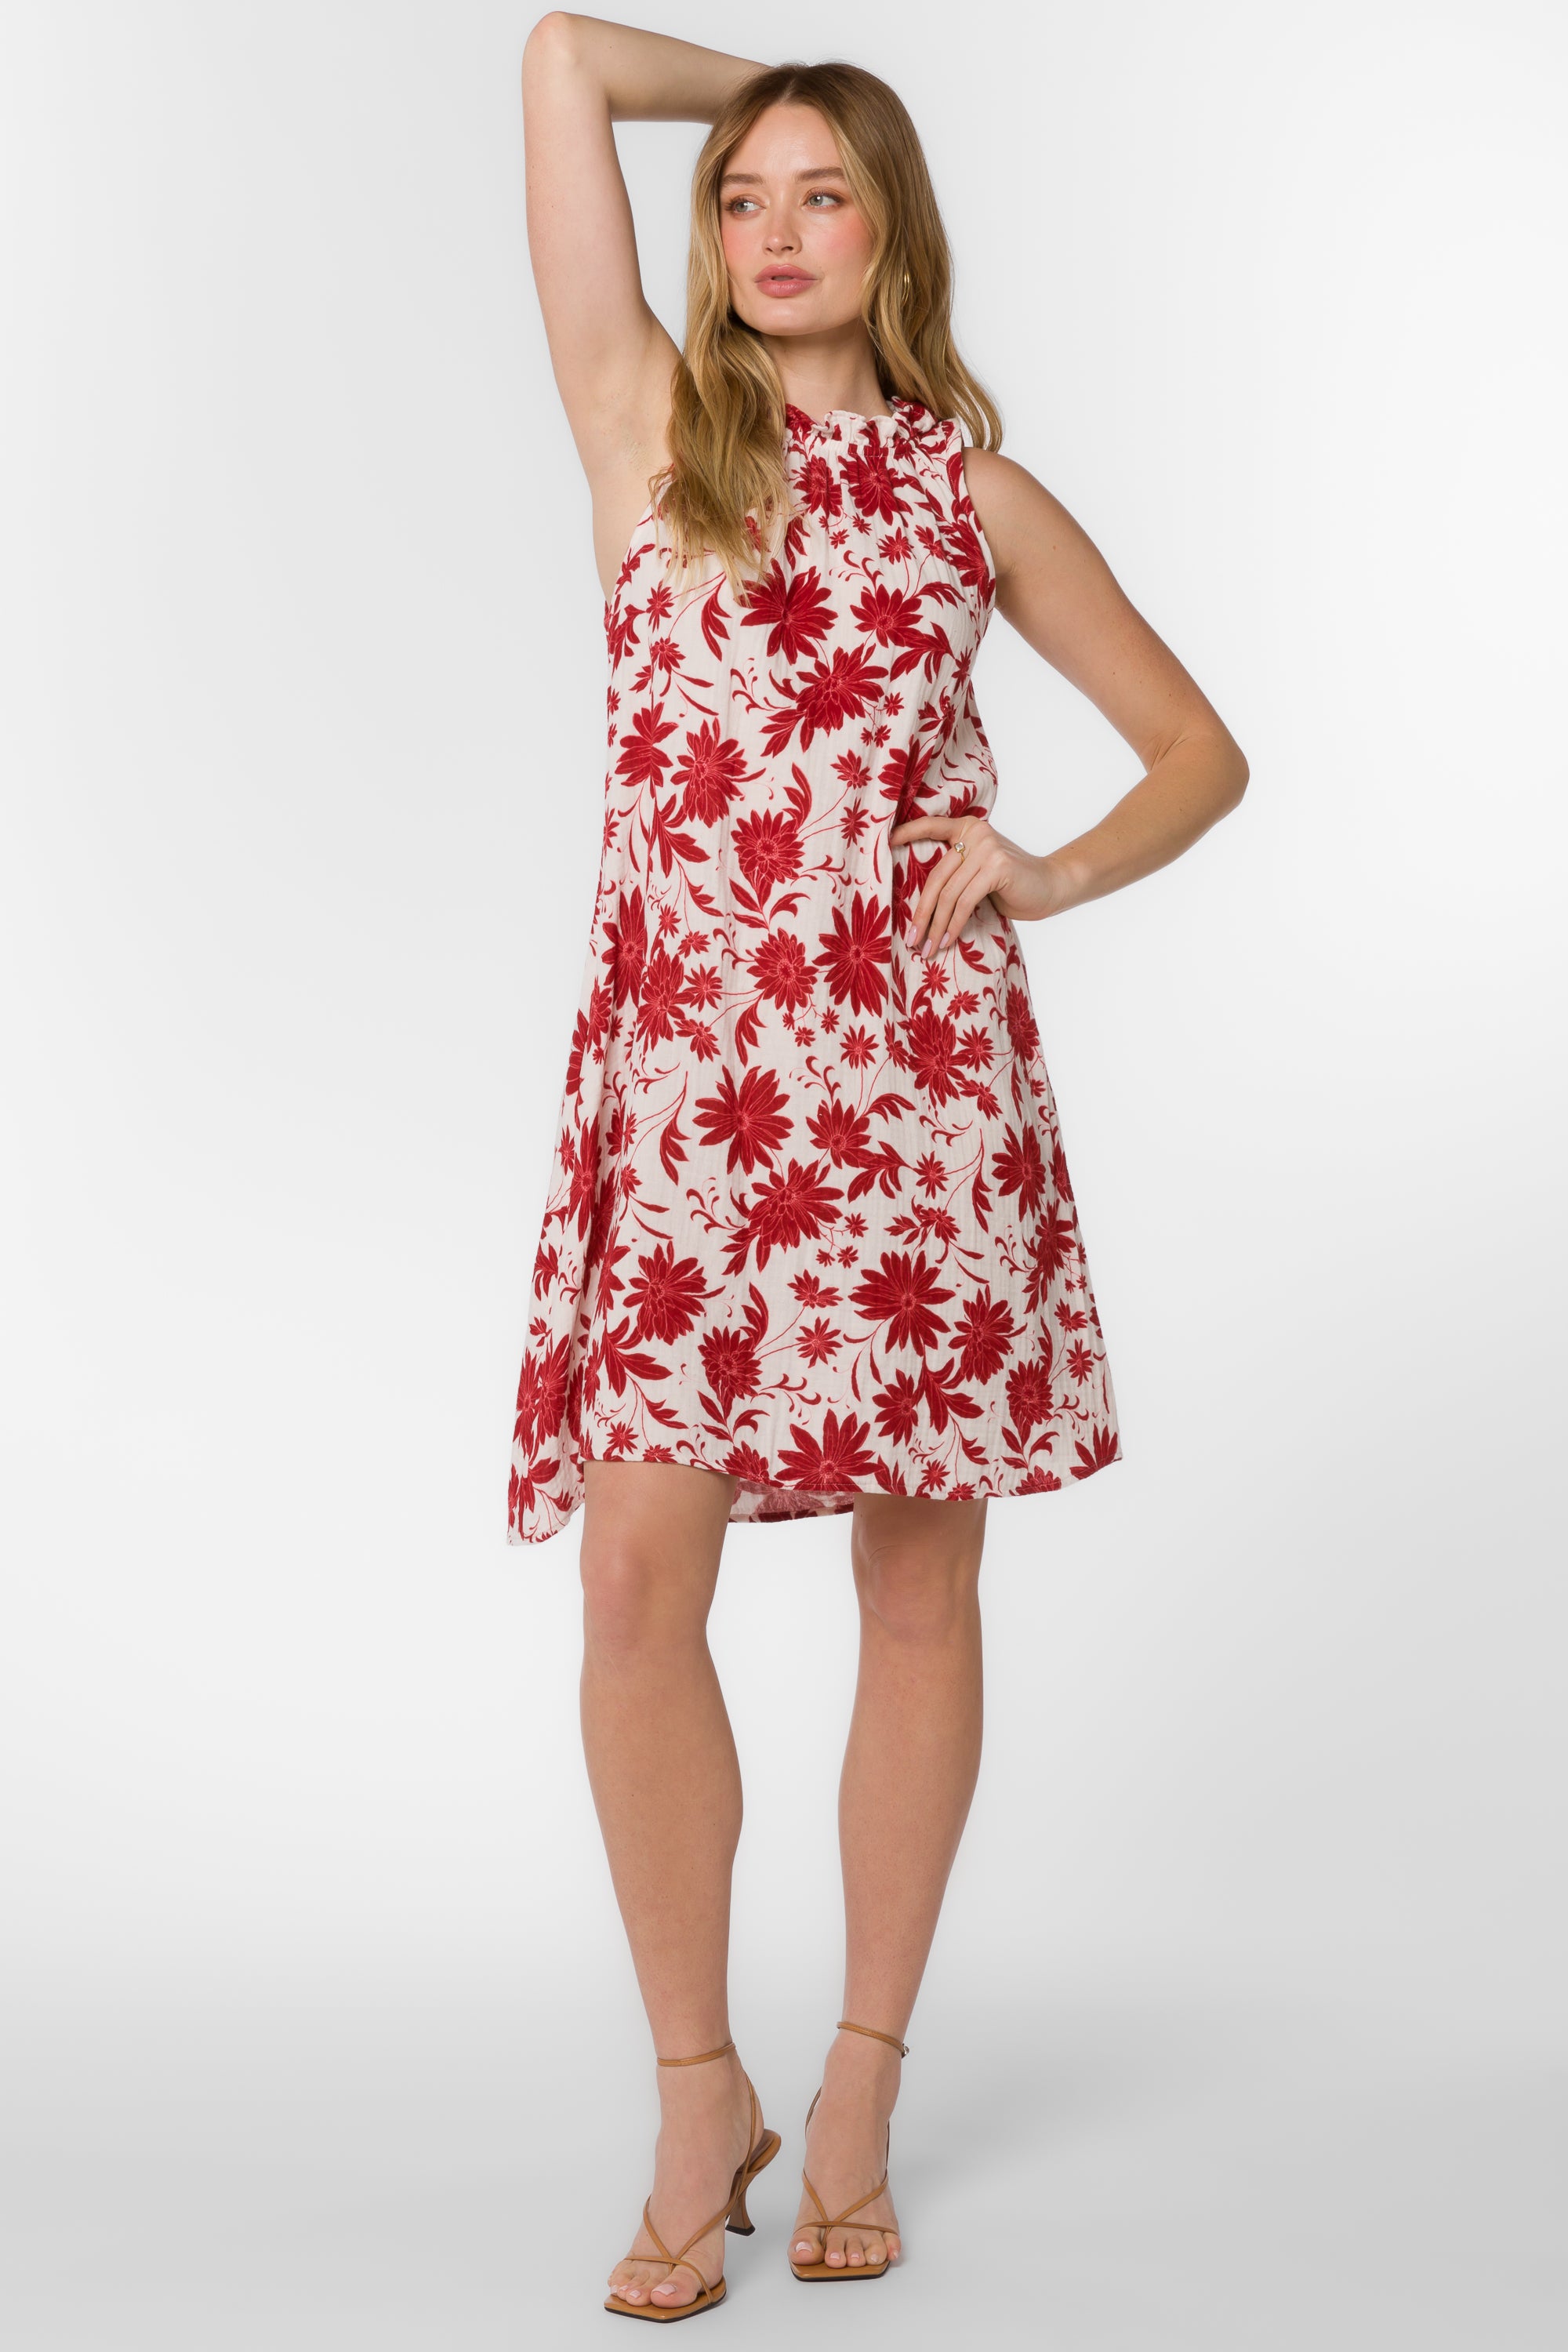 Glenda Red Floral Dress - Dresses - Velvet Heart Clothing